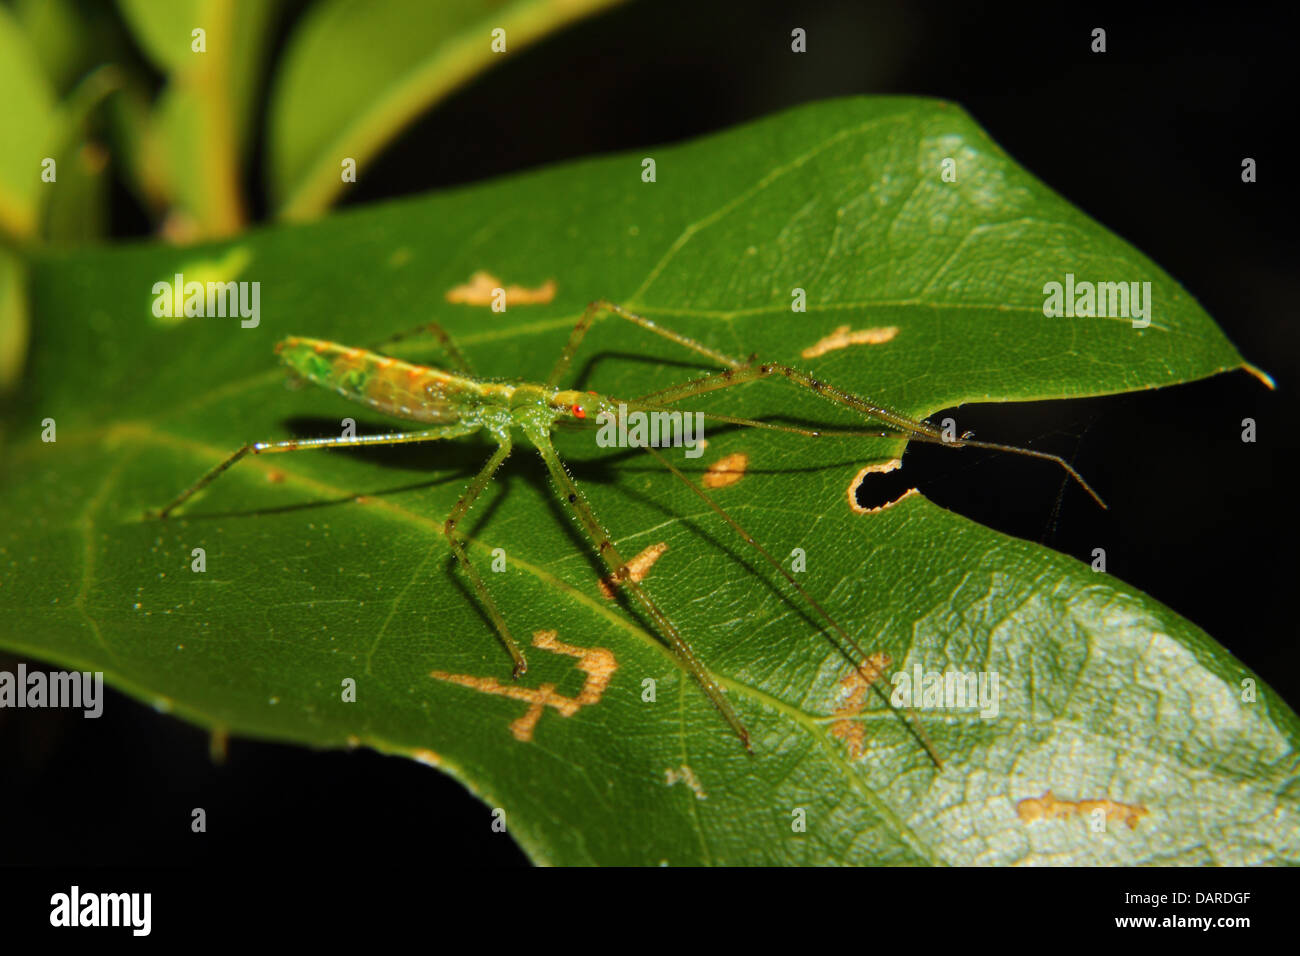 Un assassin bug vert avec des yeux rouges et de longues jambes est perché sur une feuille verte. Banque D'Images